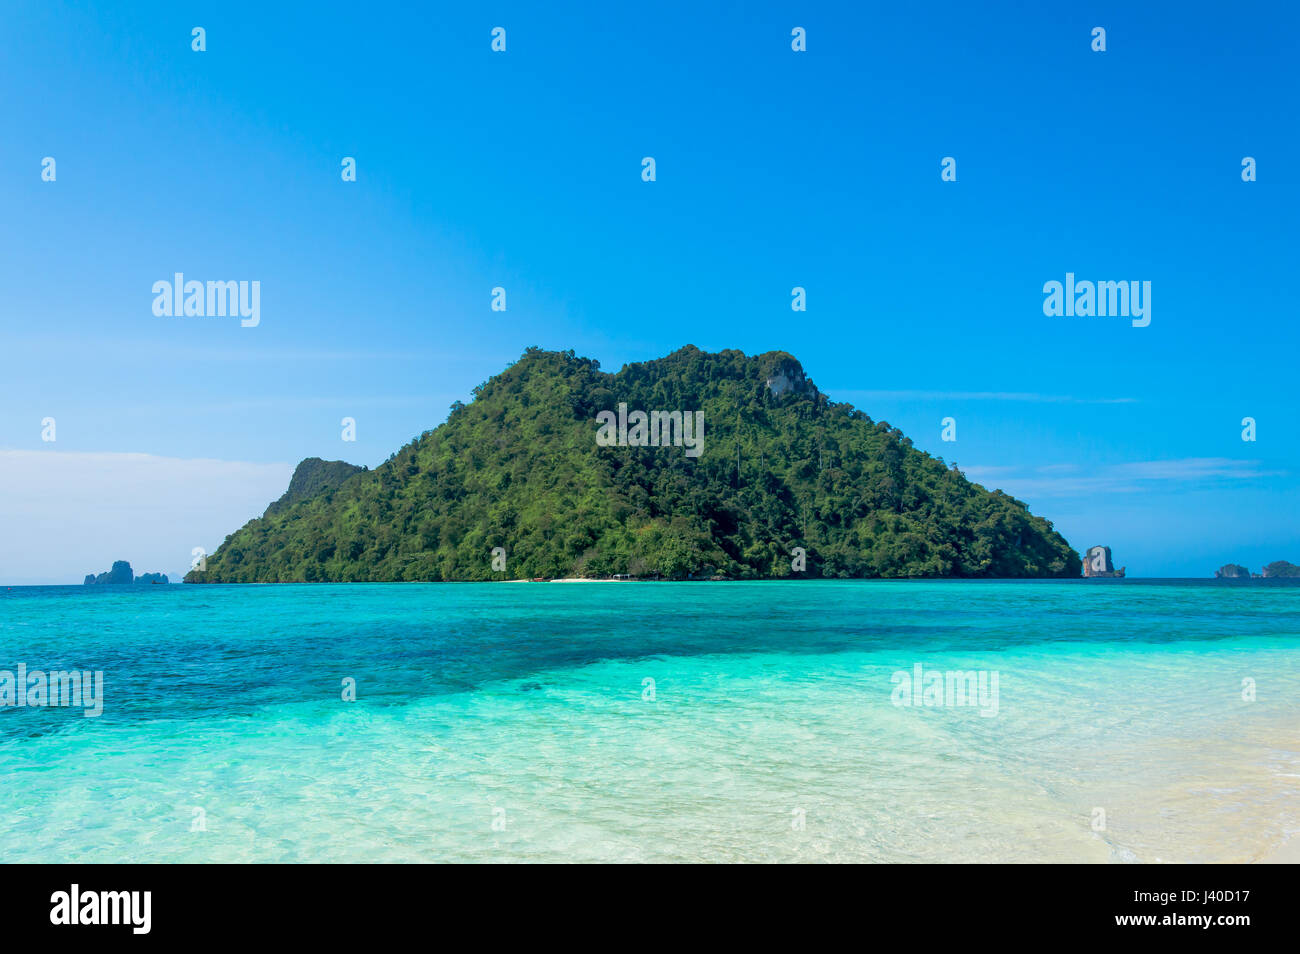 Vue panoramique de l'île tropicale contre le ciel bleu Banque D'Images